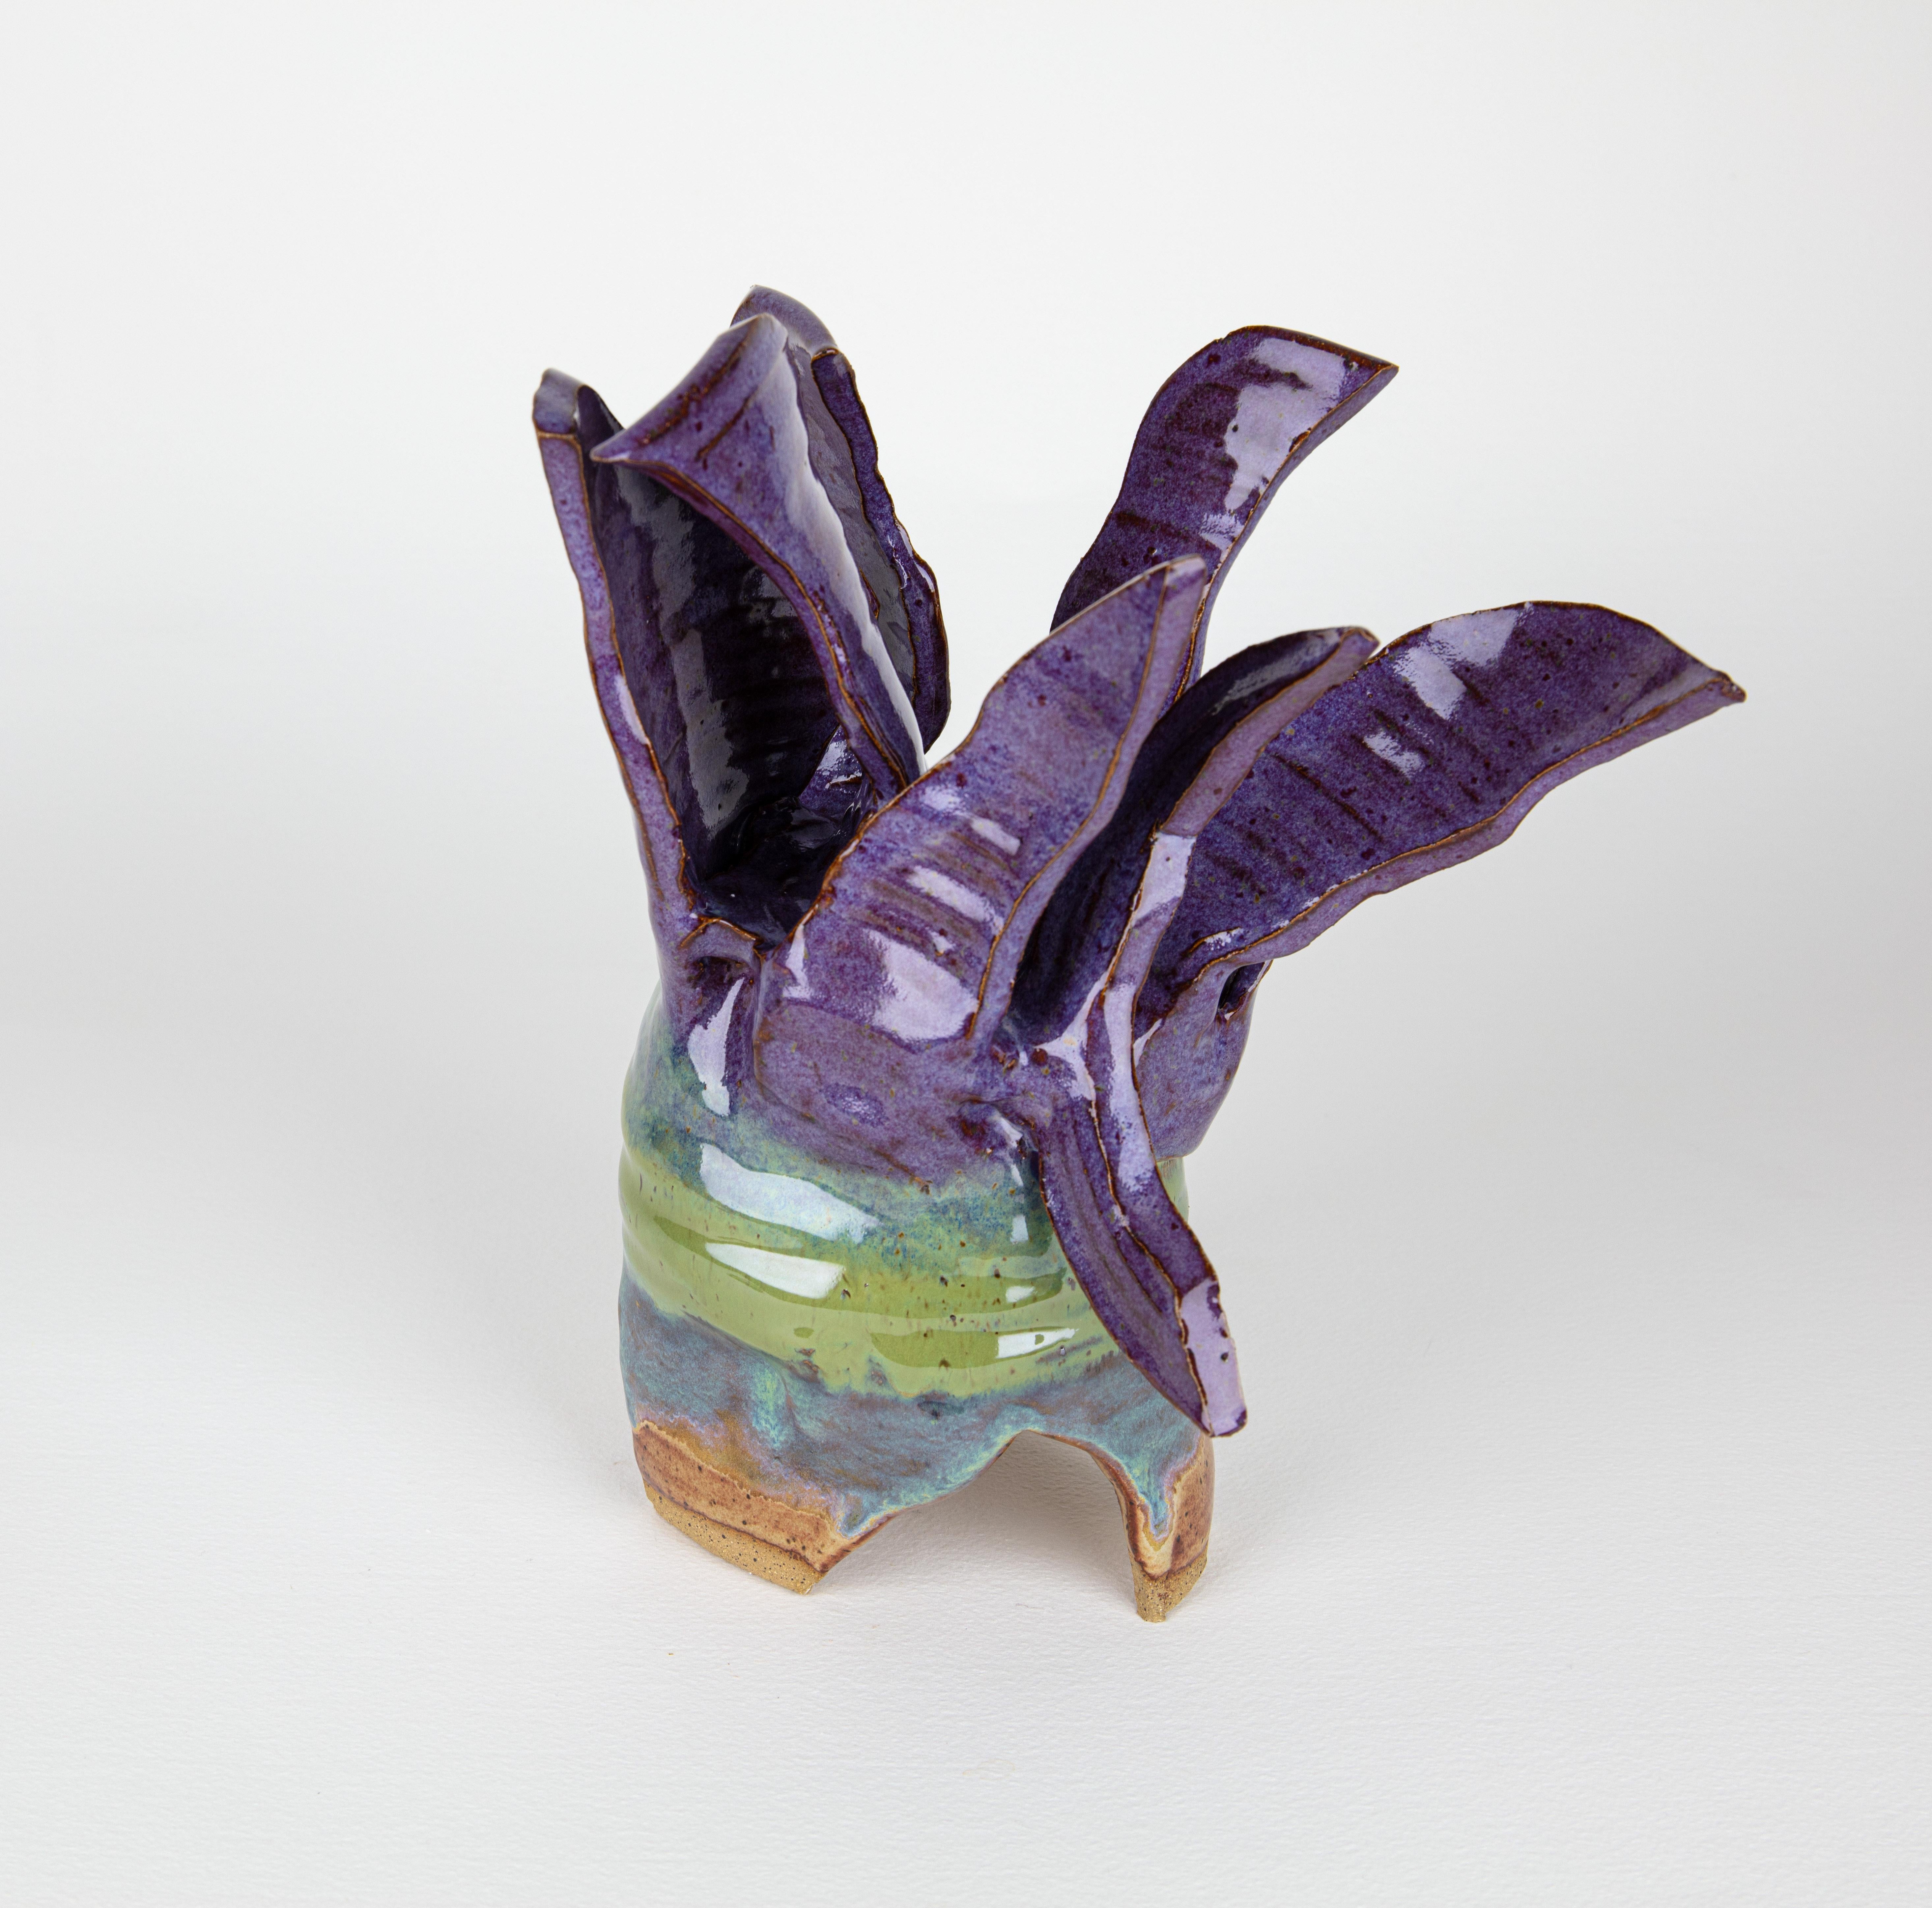 Rachelle Krieger Still-Life Sculpture - Blossom 1, Abstract ceramic sculpture, purple and green flower